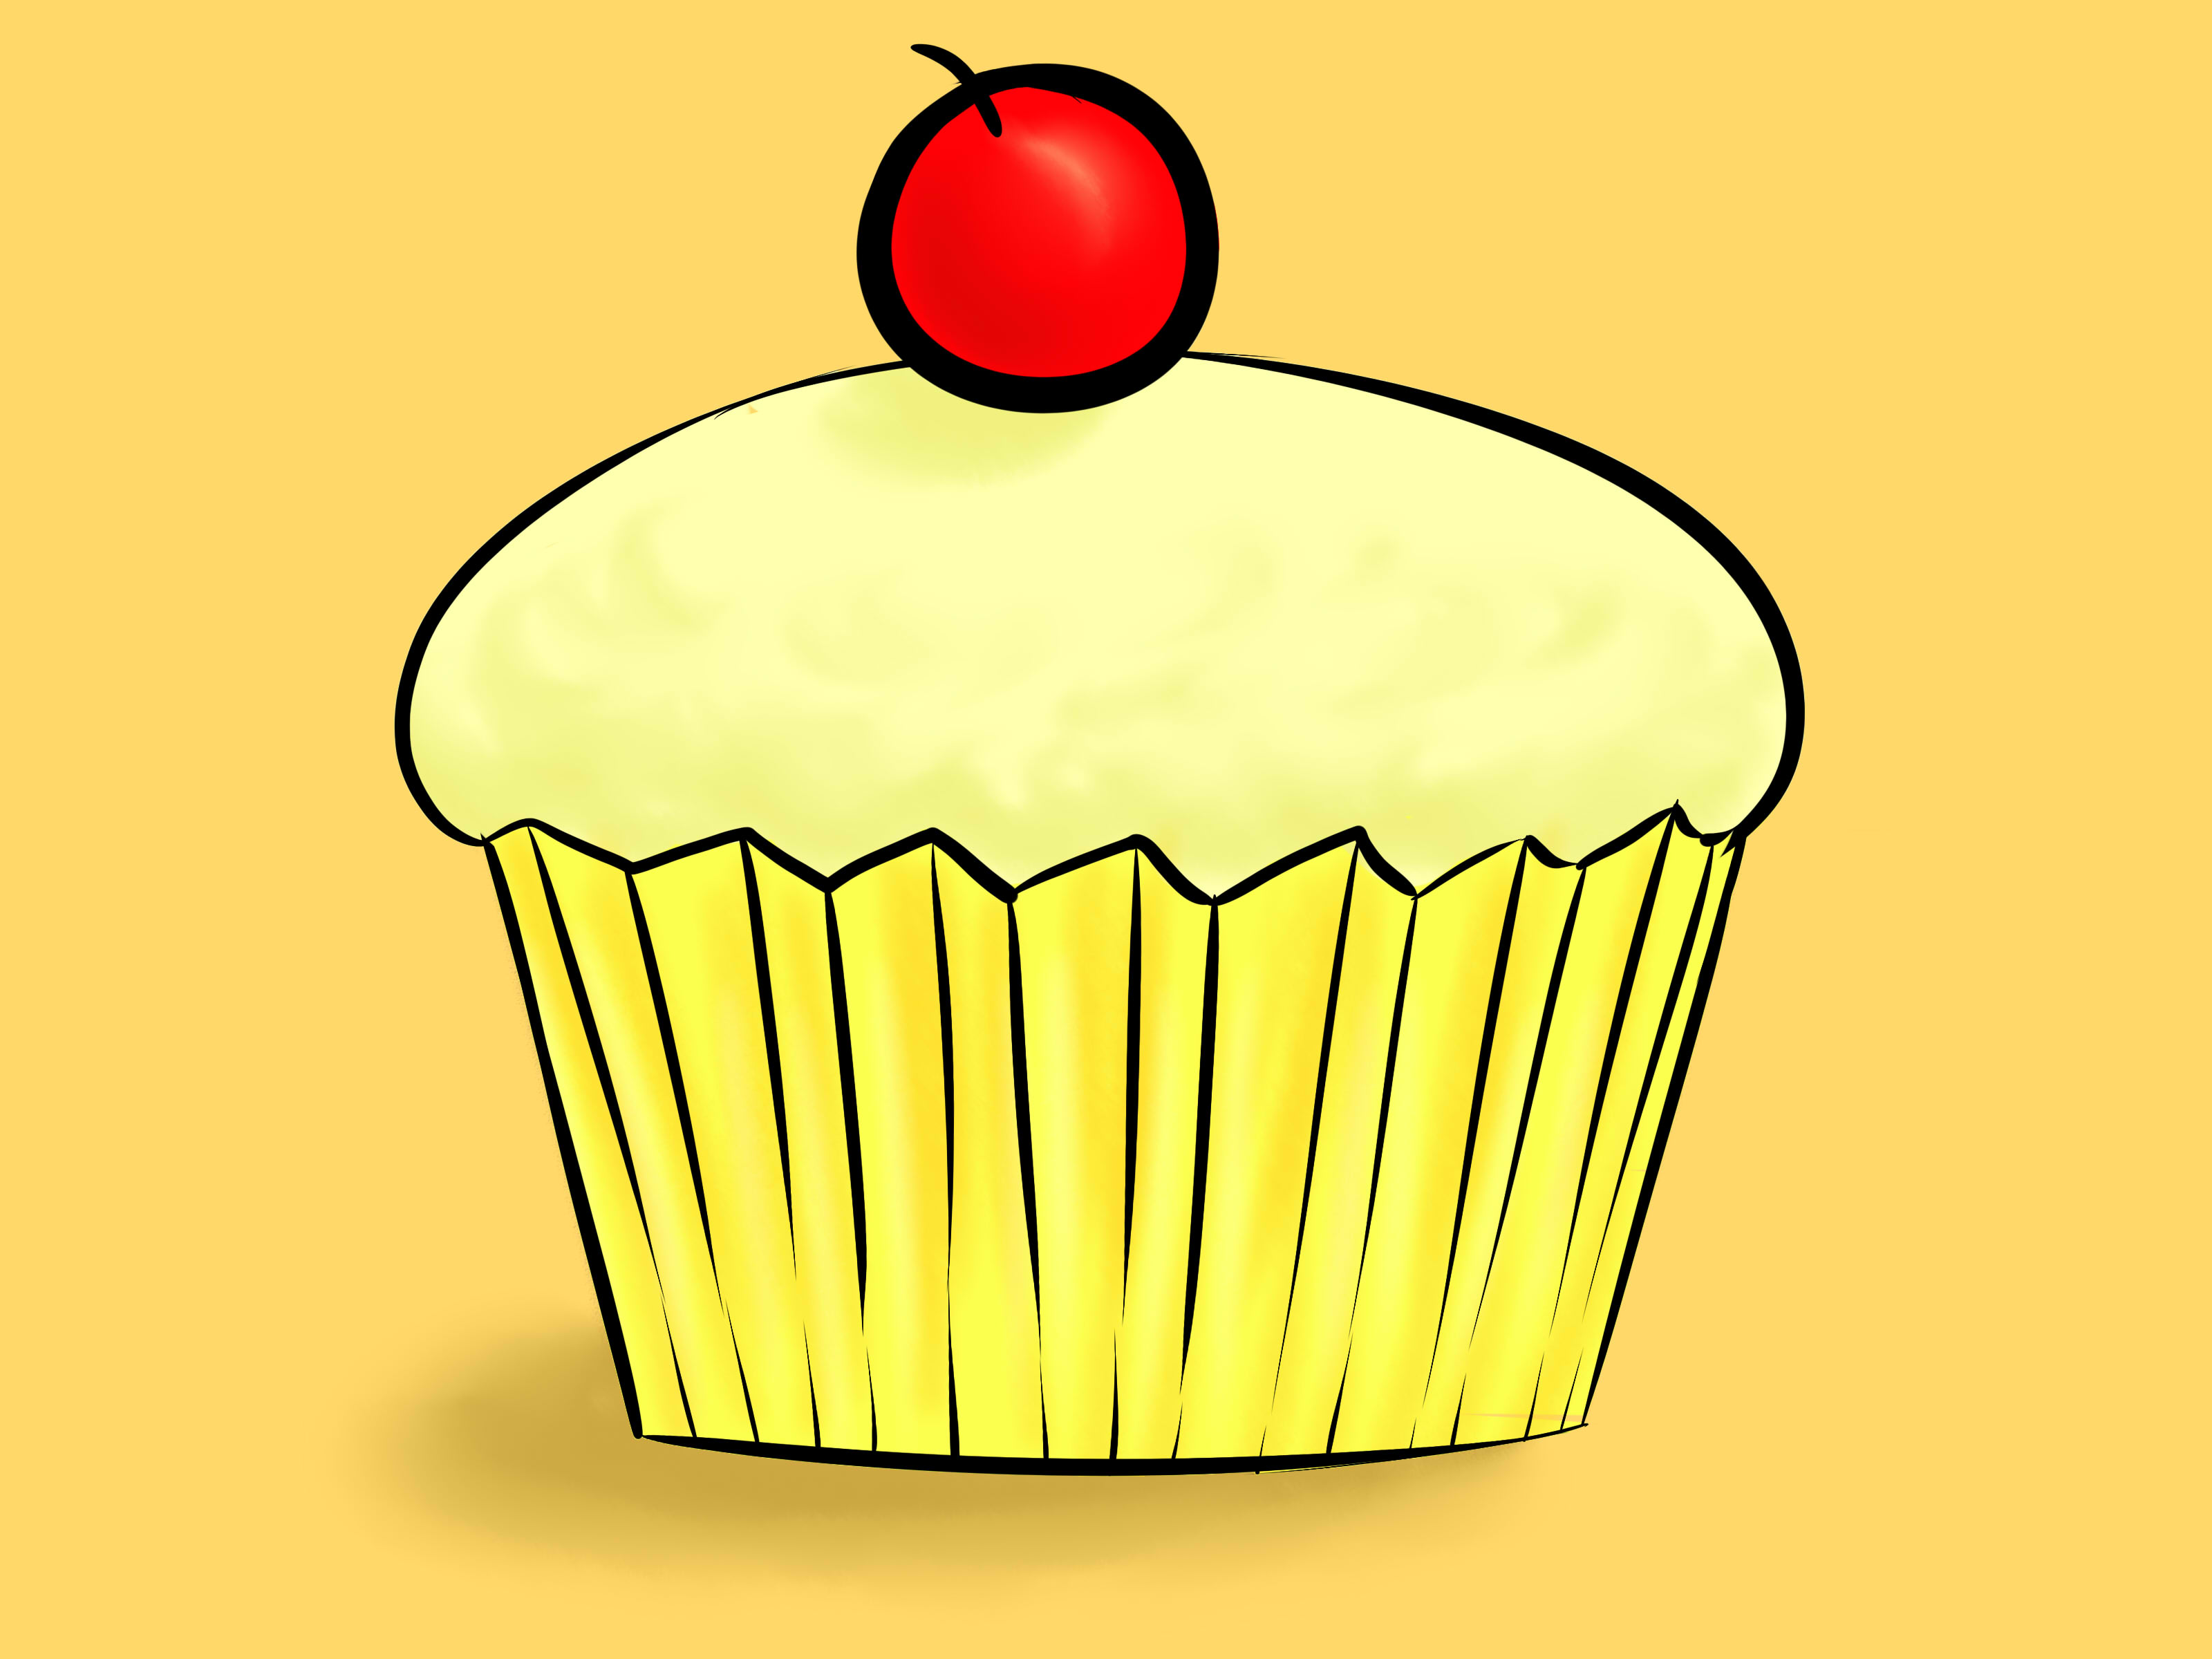 Draw-a-Cupcake-Step-15.jpg